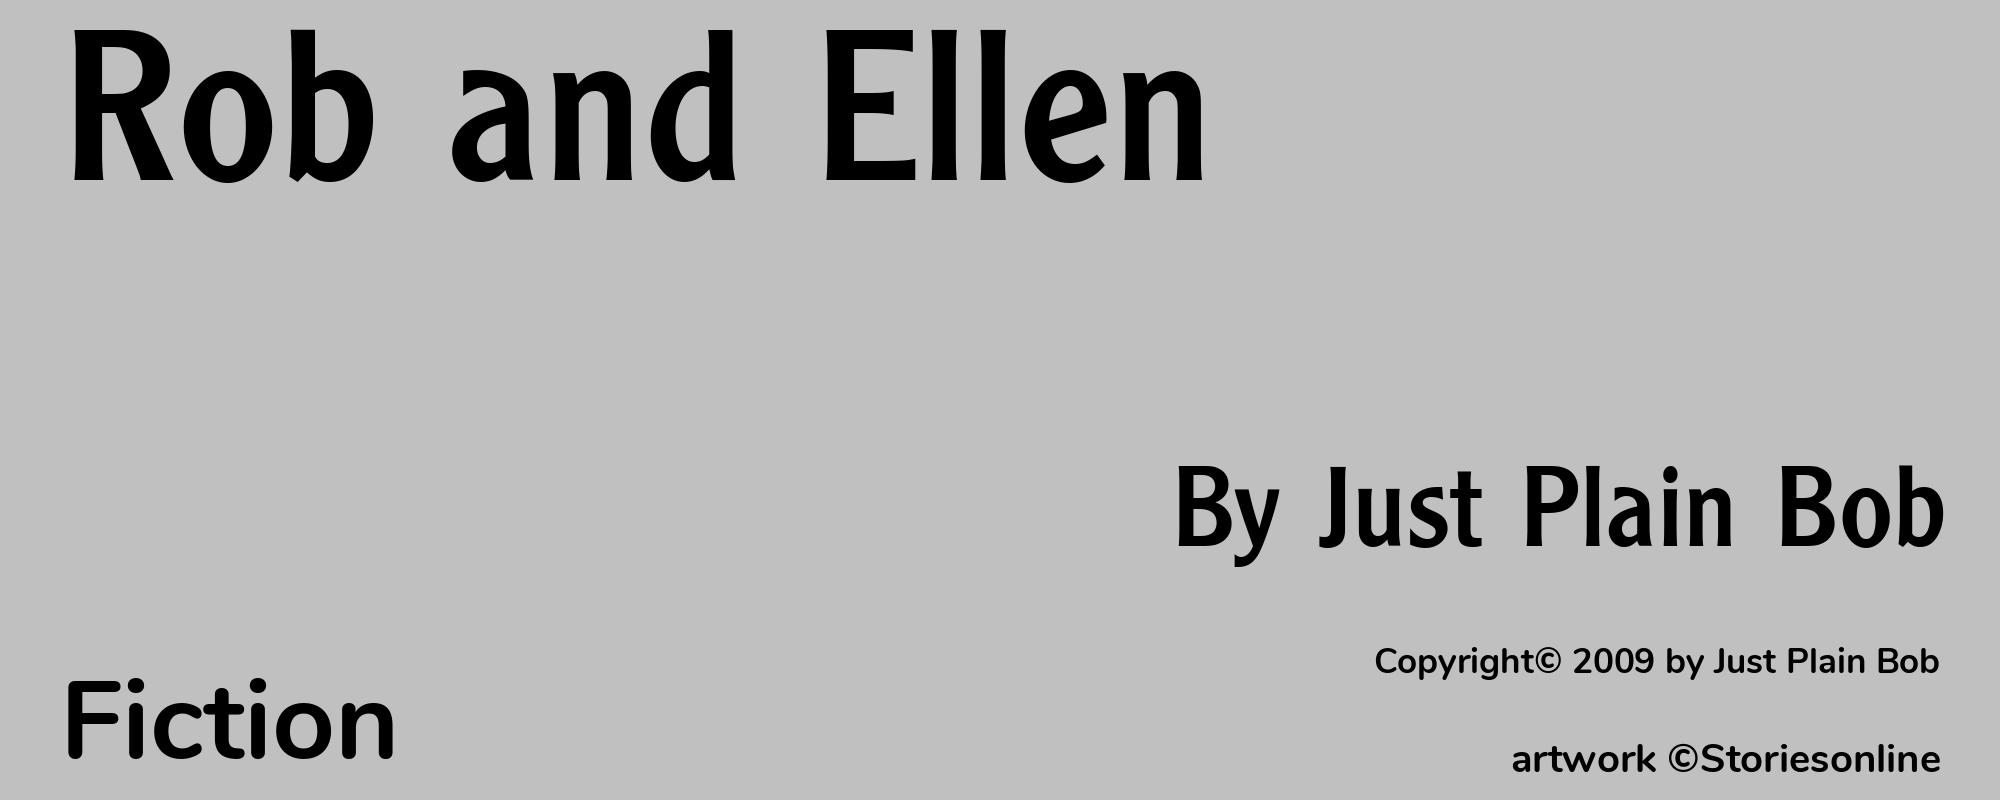 Rob and Ellen - Cover